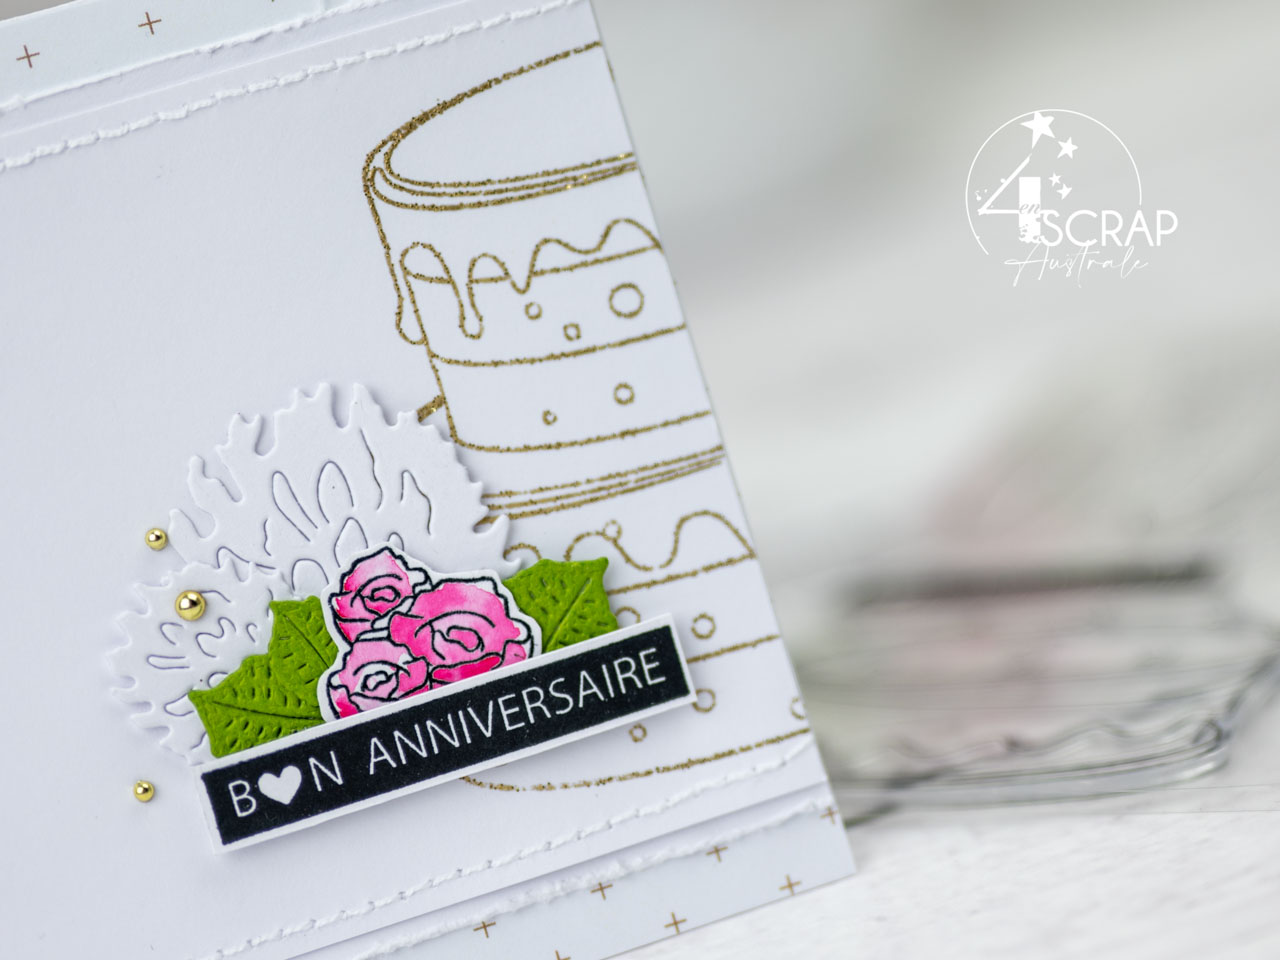 Création d'un duo de cartes miroir pour anniversaires avec gâteau embossé à la poudre pailletée dorée, fleurs et bougies à l'aquarelle et quelques feuillages pour mettre en avant la collection anniversaire de 4enscrap.